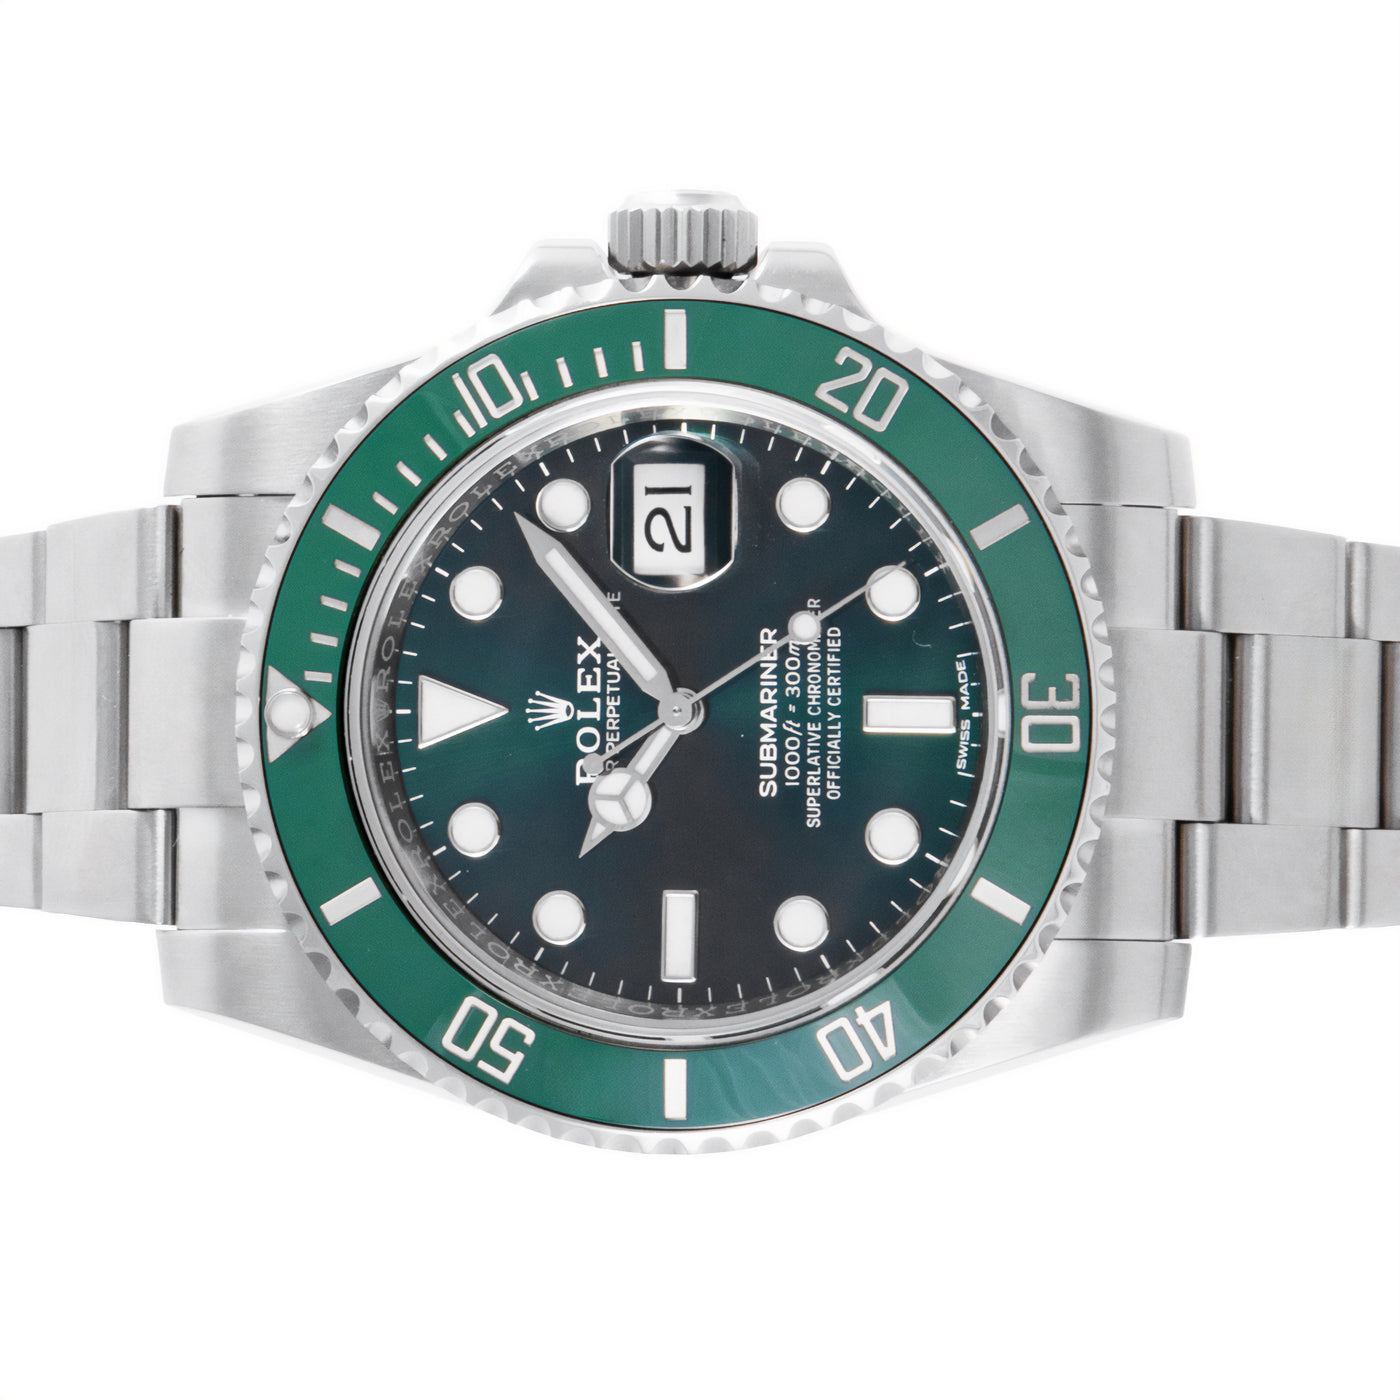 Rolex Submariner Date Hulk 116610LV | Timepiece360